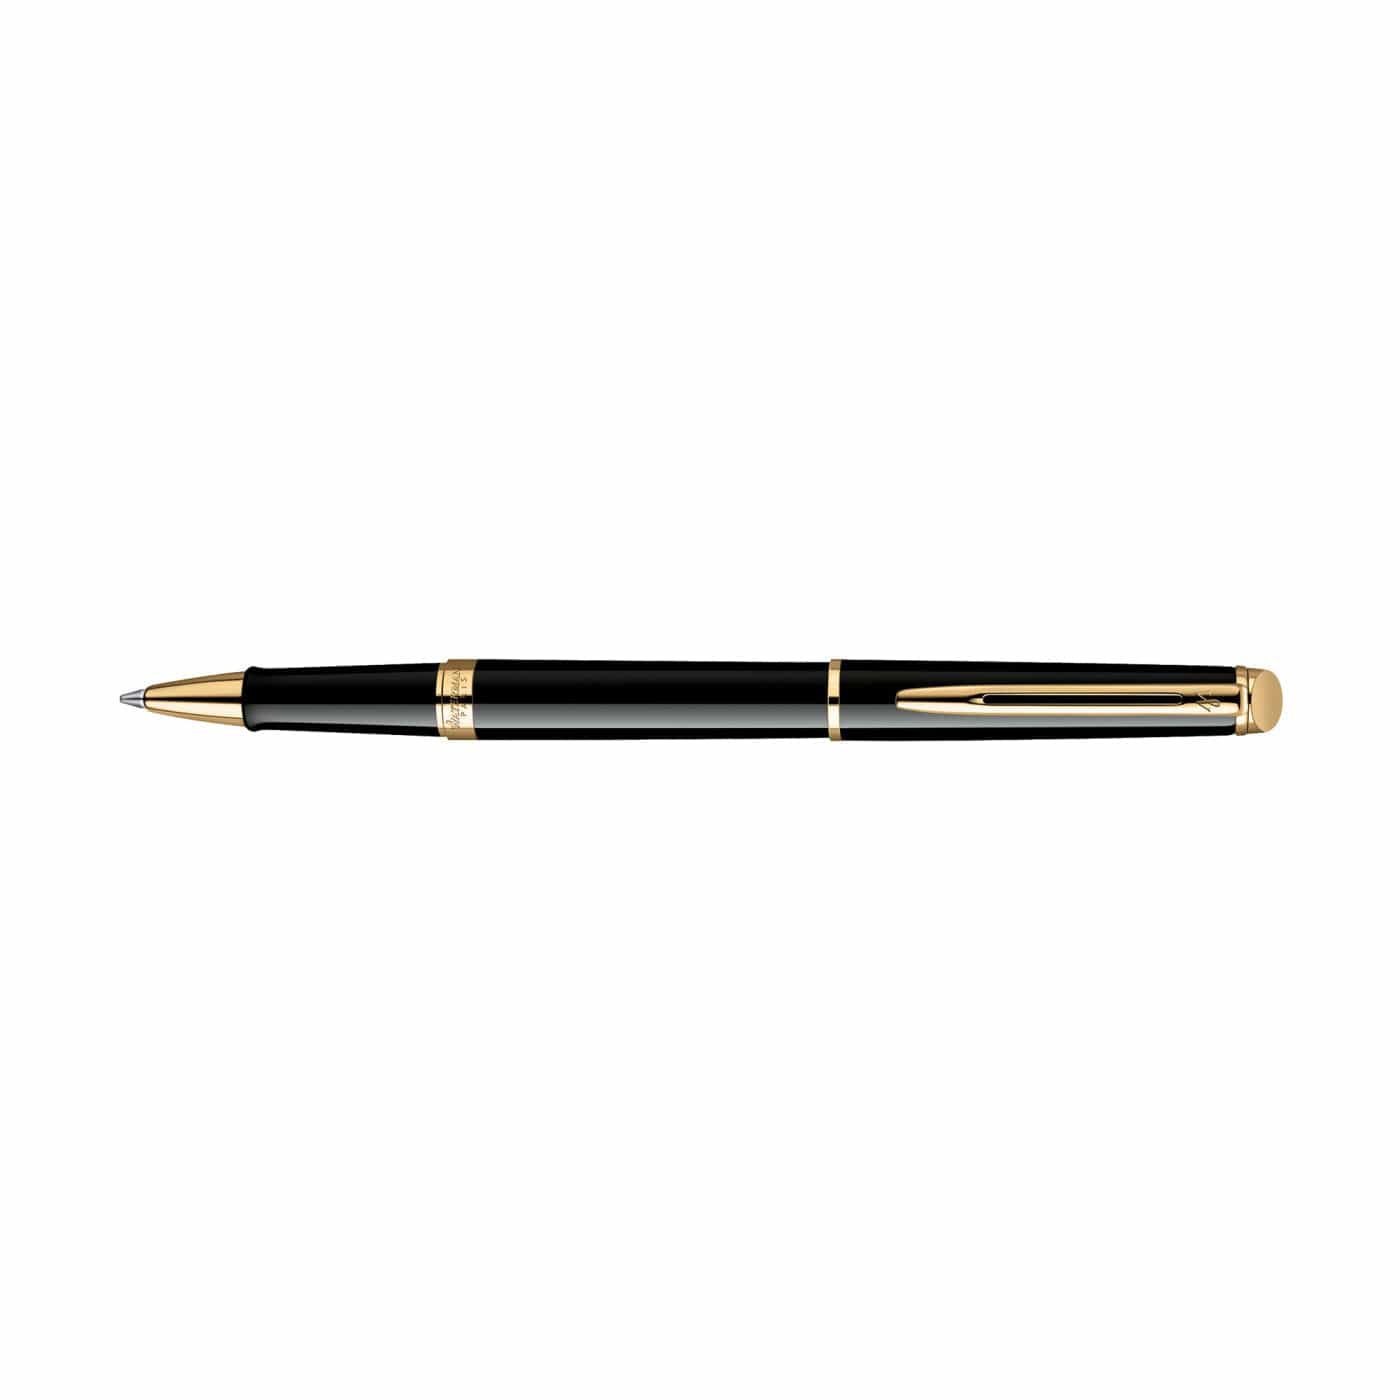 Waterman Accessories One Size / Black/Gold Trim Waterman - Hemisphere Rollerball Pen (Black Ink)